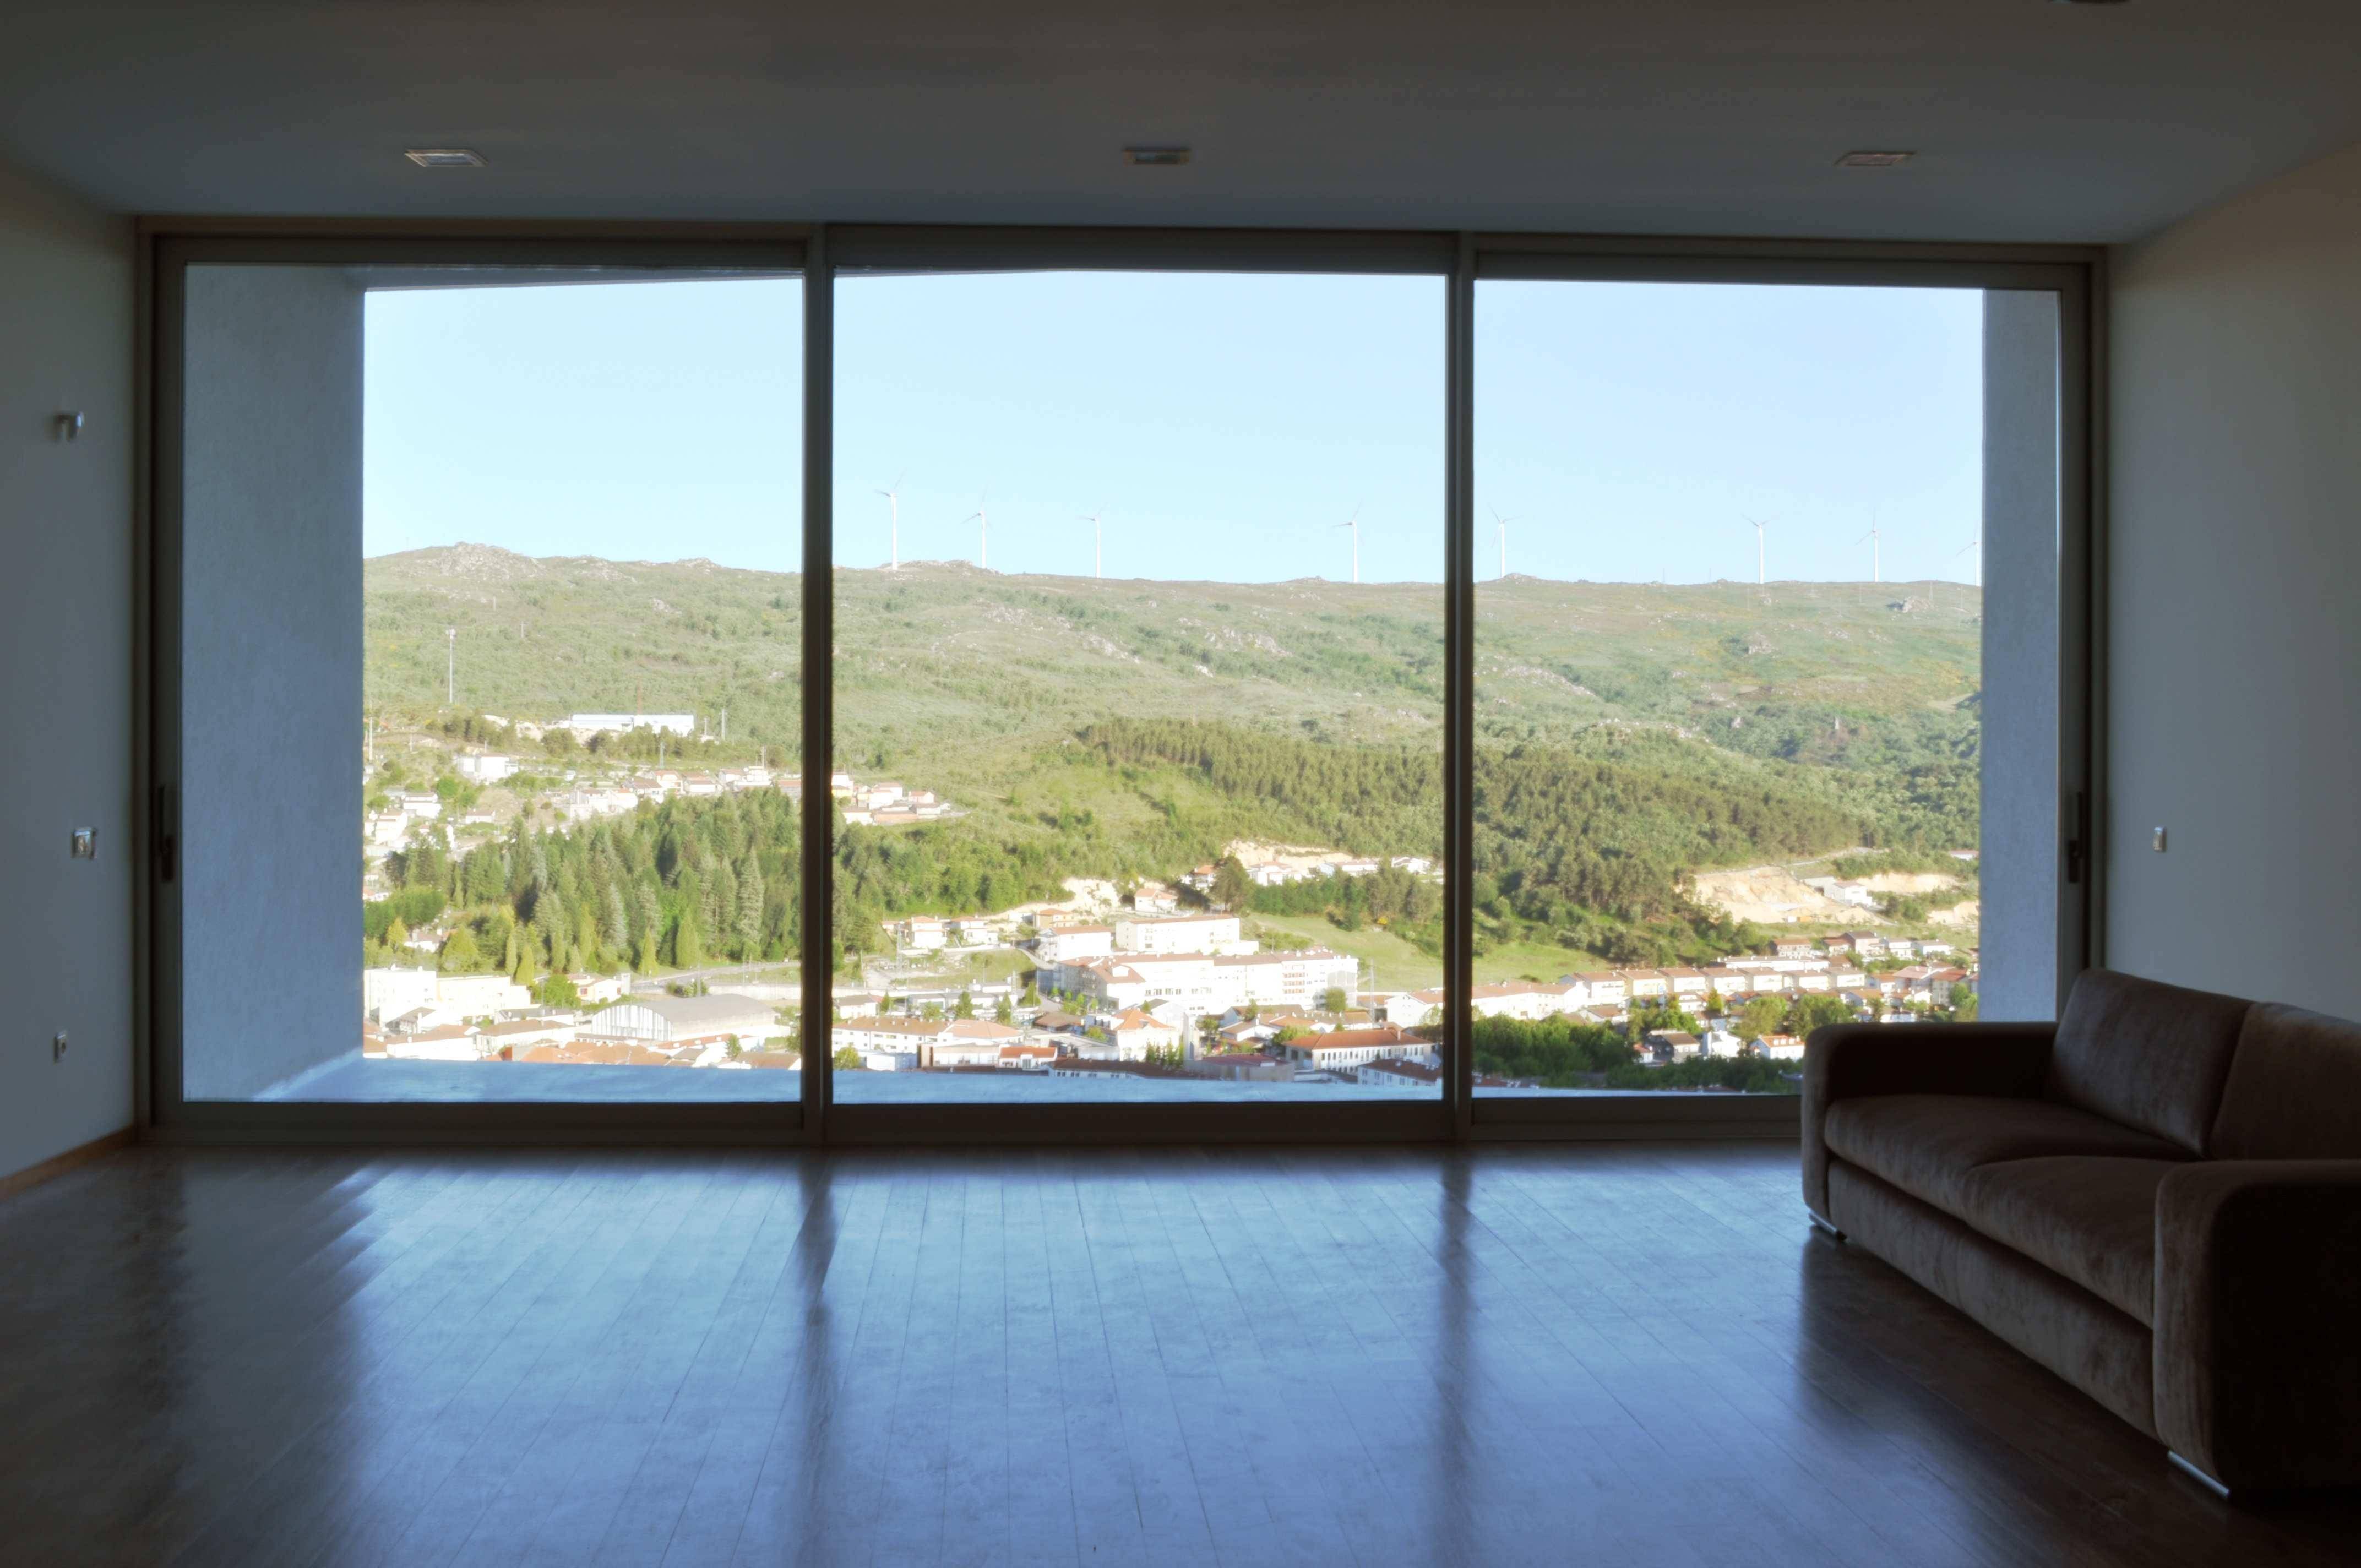 Панорамное остекление в квартире: можно ли сделать и как?